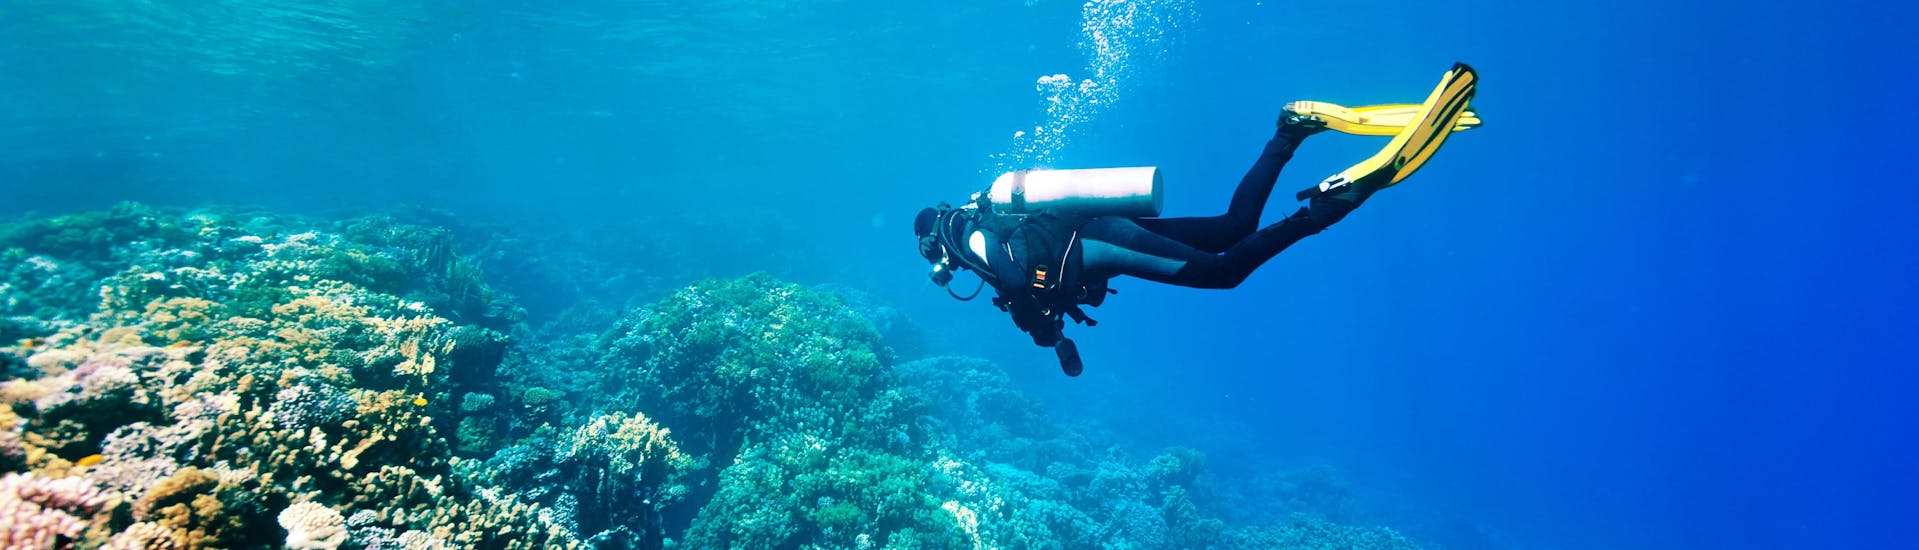 Un subacqueo sta esplorando il mondo sottomarino mentre fa immersioni presso Stavros Cave.